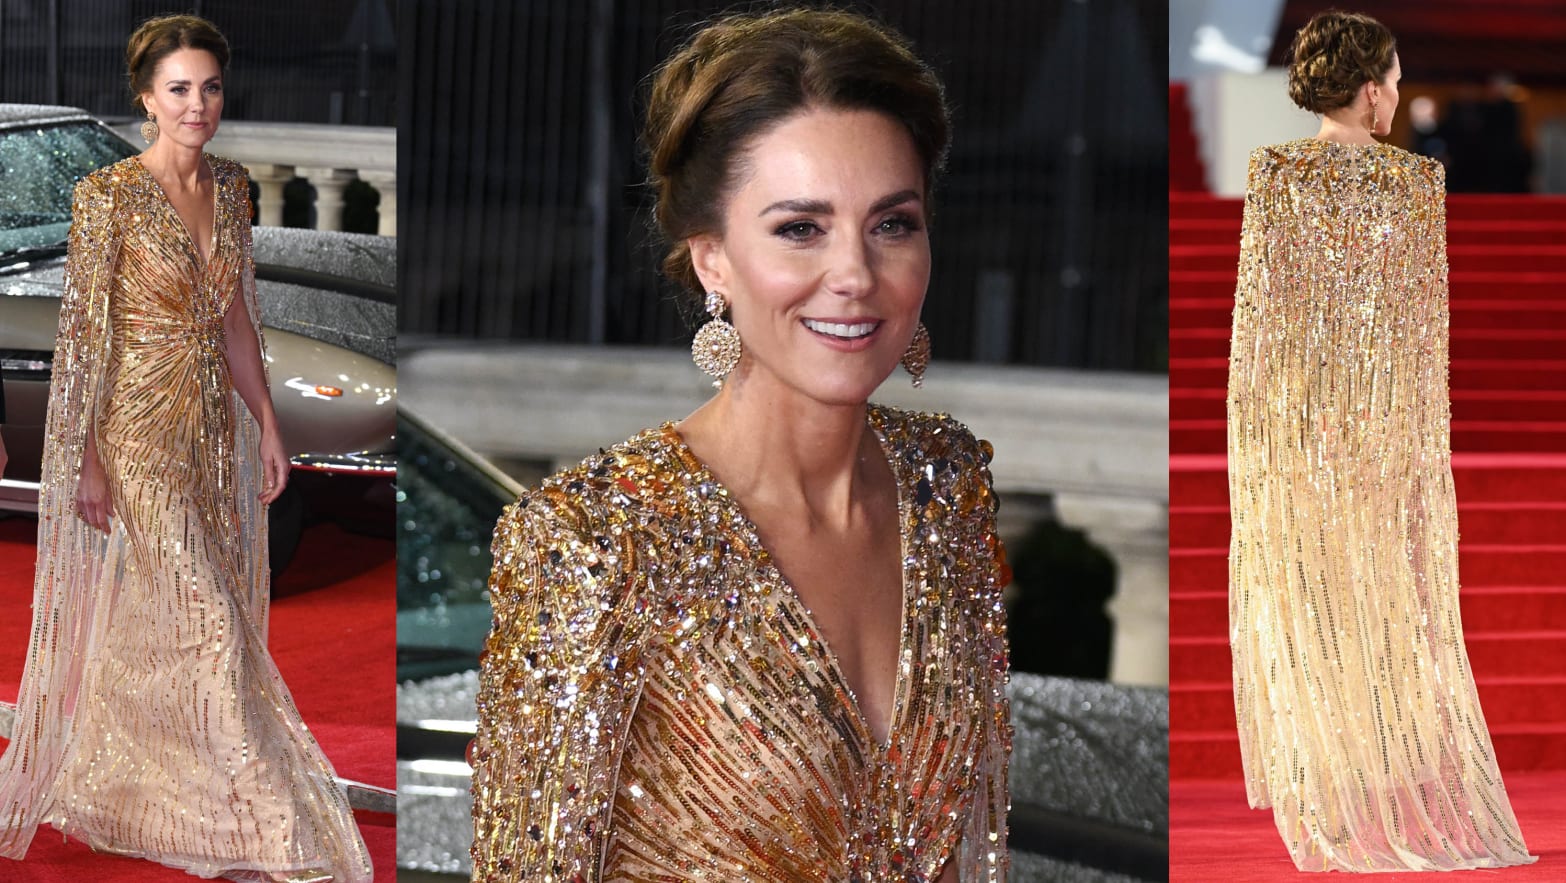 Kate Middleton diện 'bộ cánh' của NTK Jenny Packham, một nhà mốt quen thuộc của hoàng thất. Chiếc váy với phần ngực xẻ sâu và điểm thắt eo tôn dáng cùng áo choàng lộng lẫy đã biến công nương nước Anh trở thành “nữ hoàng thảm đỏ” trong đêm hôm ấy.